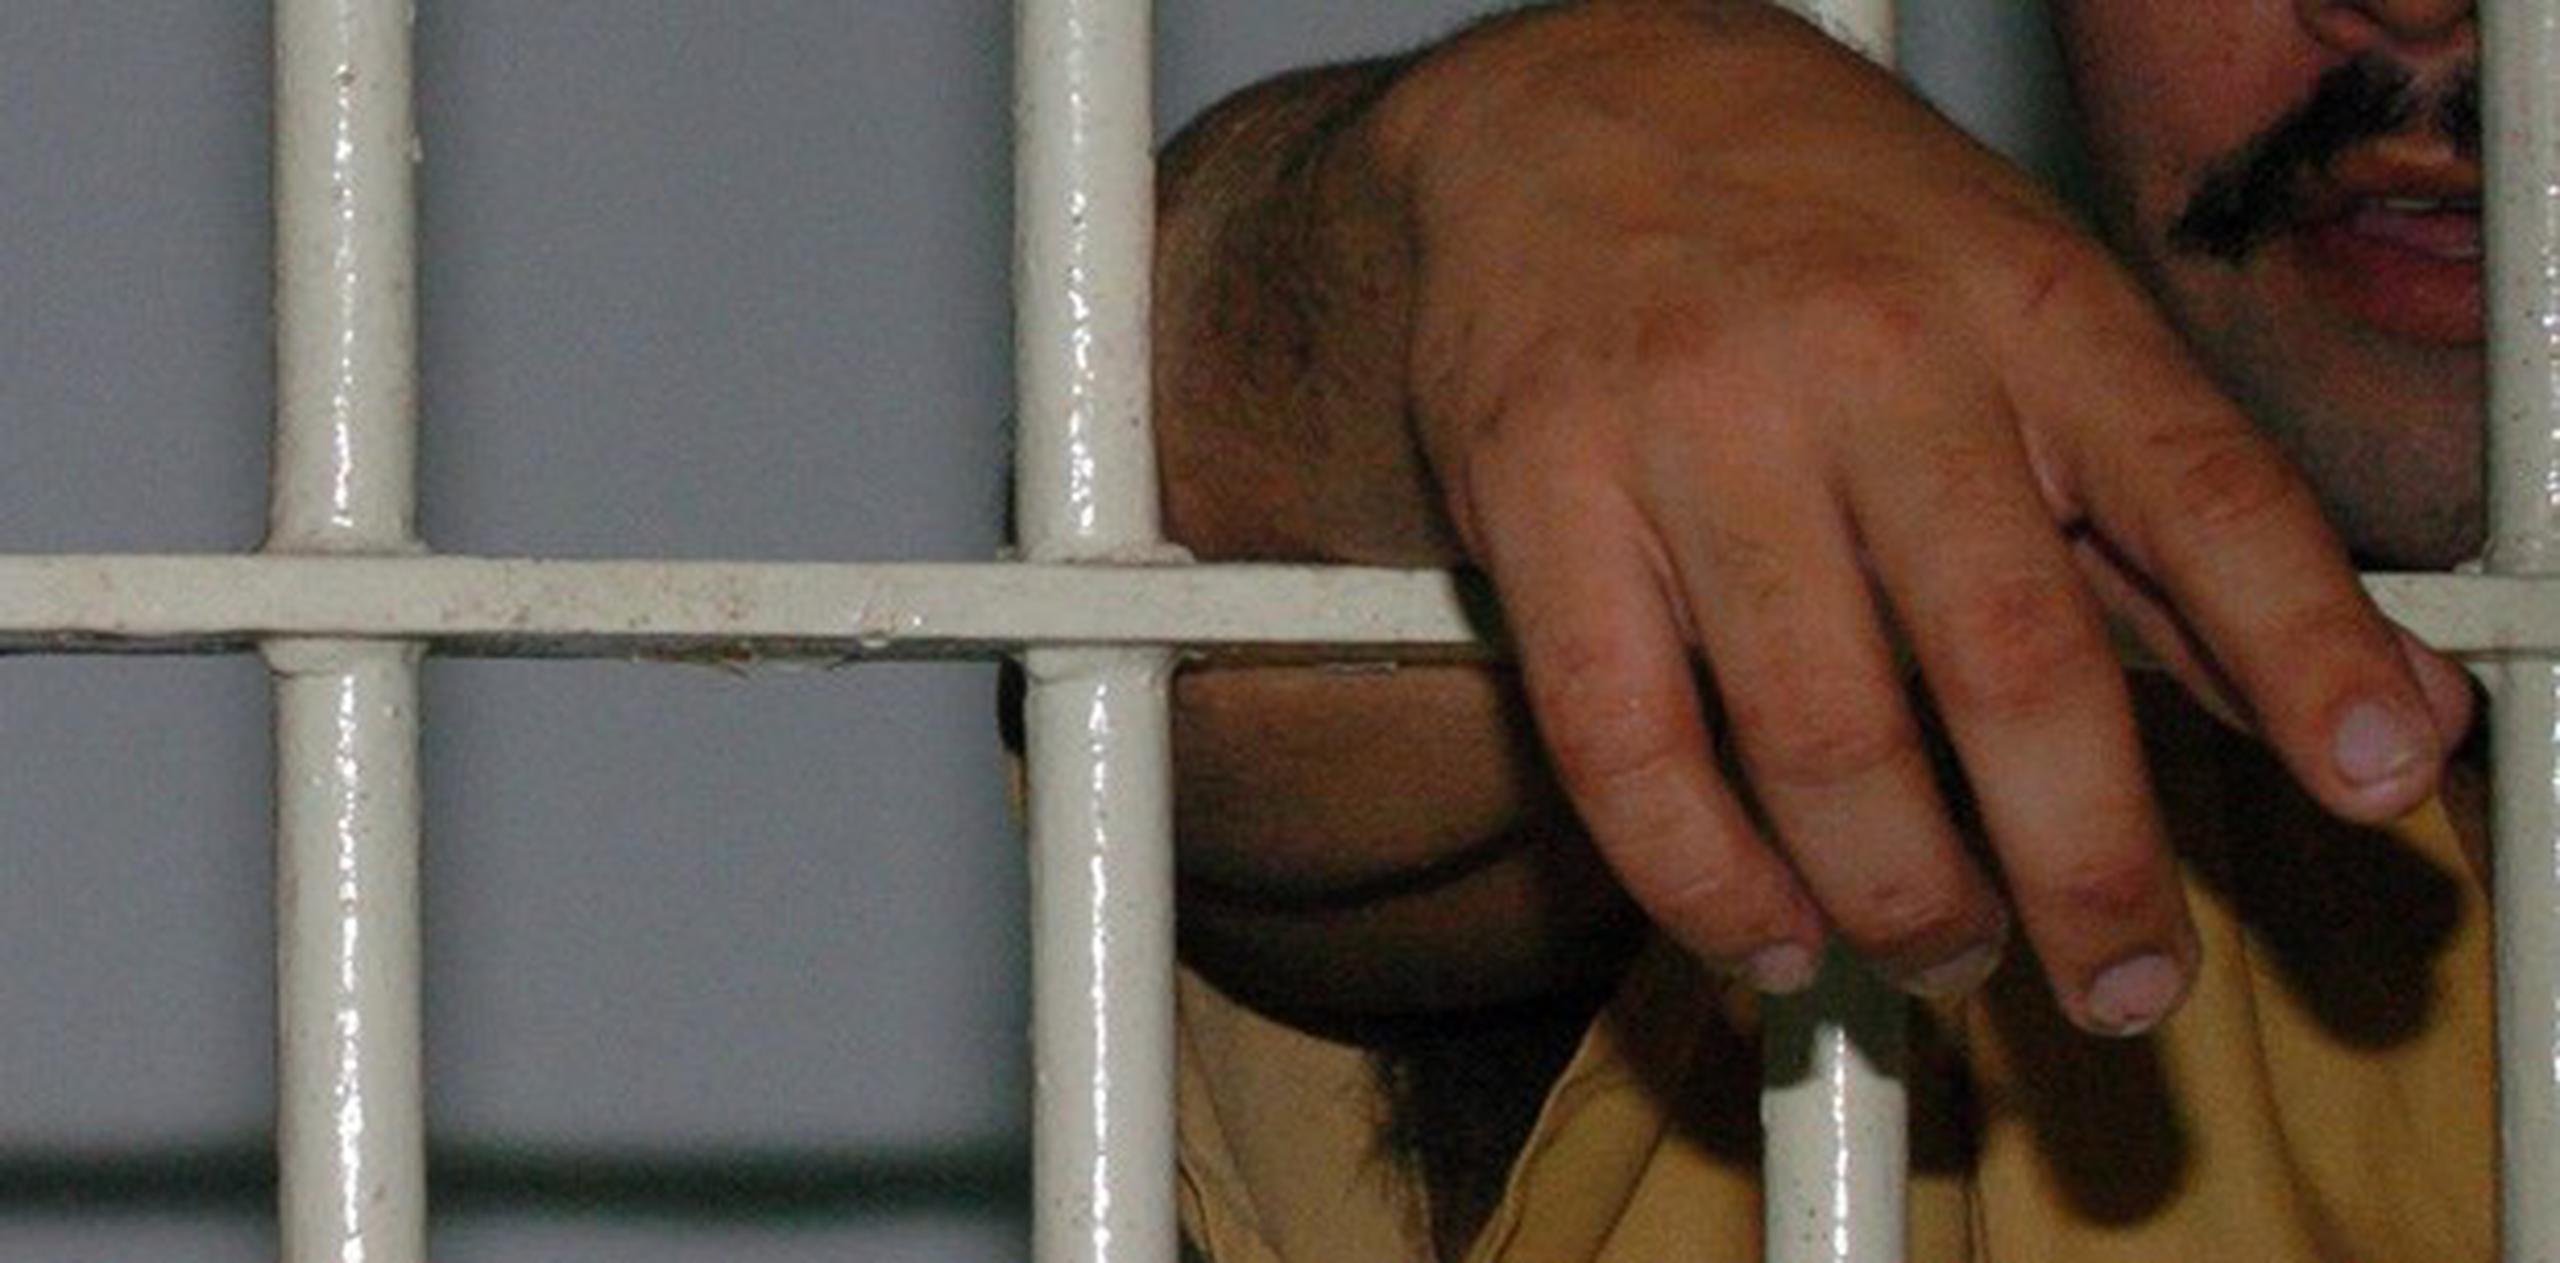 El reo se encuentra en la cárcel de Sabana Hoyos en Arecibo. (Archivo)